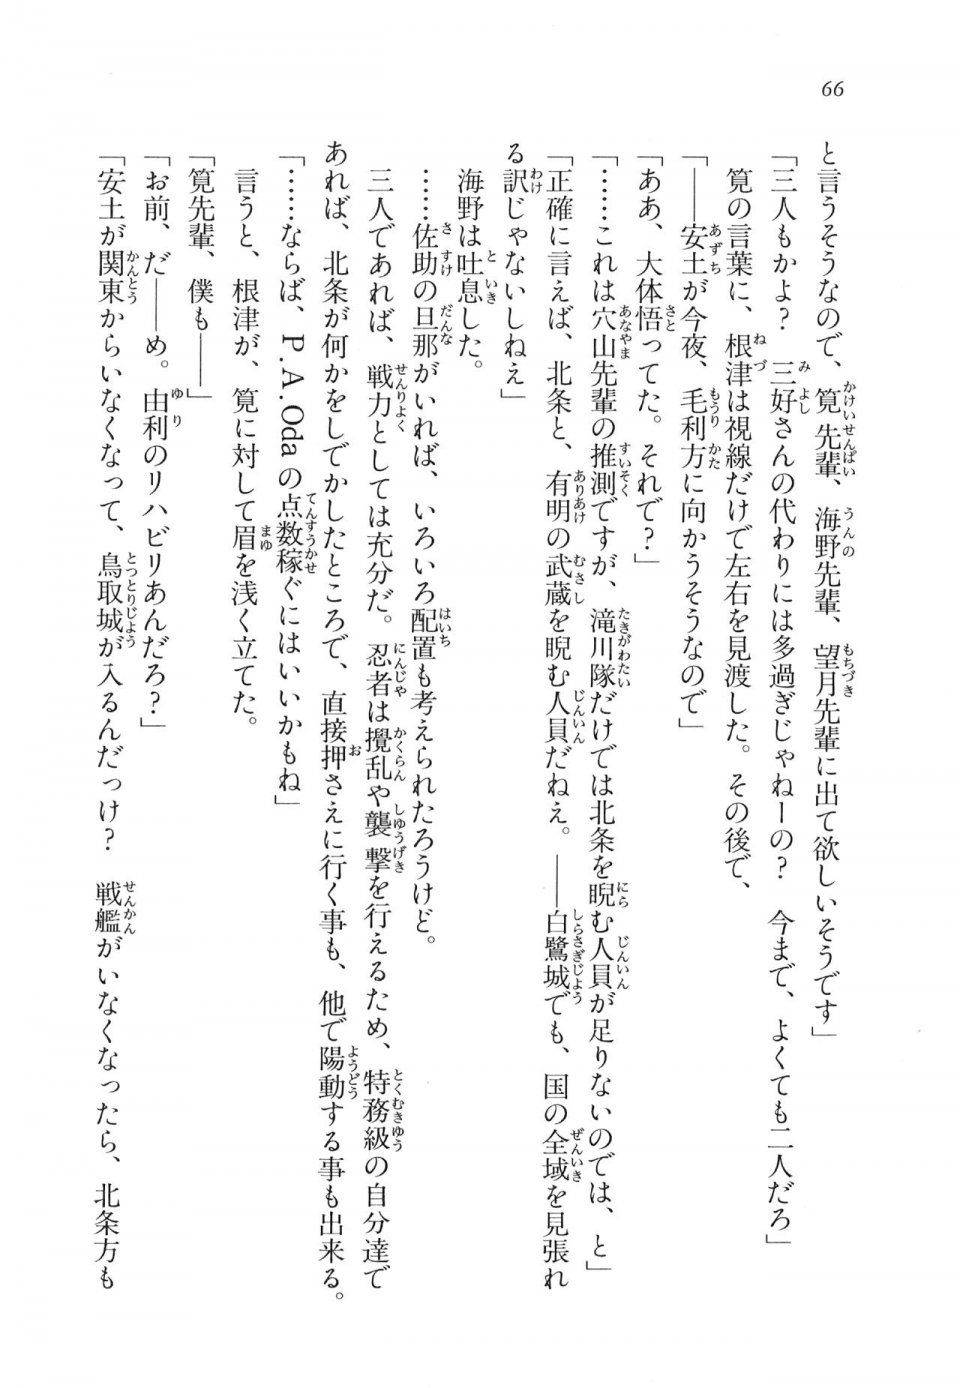 Kyoukai Senjou no Horizon LN Vol 11(5A) - Photo #66